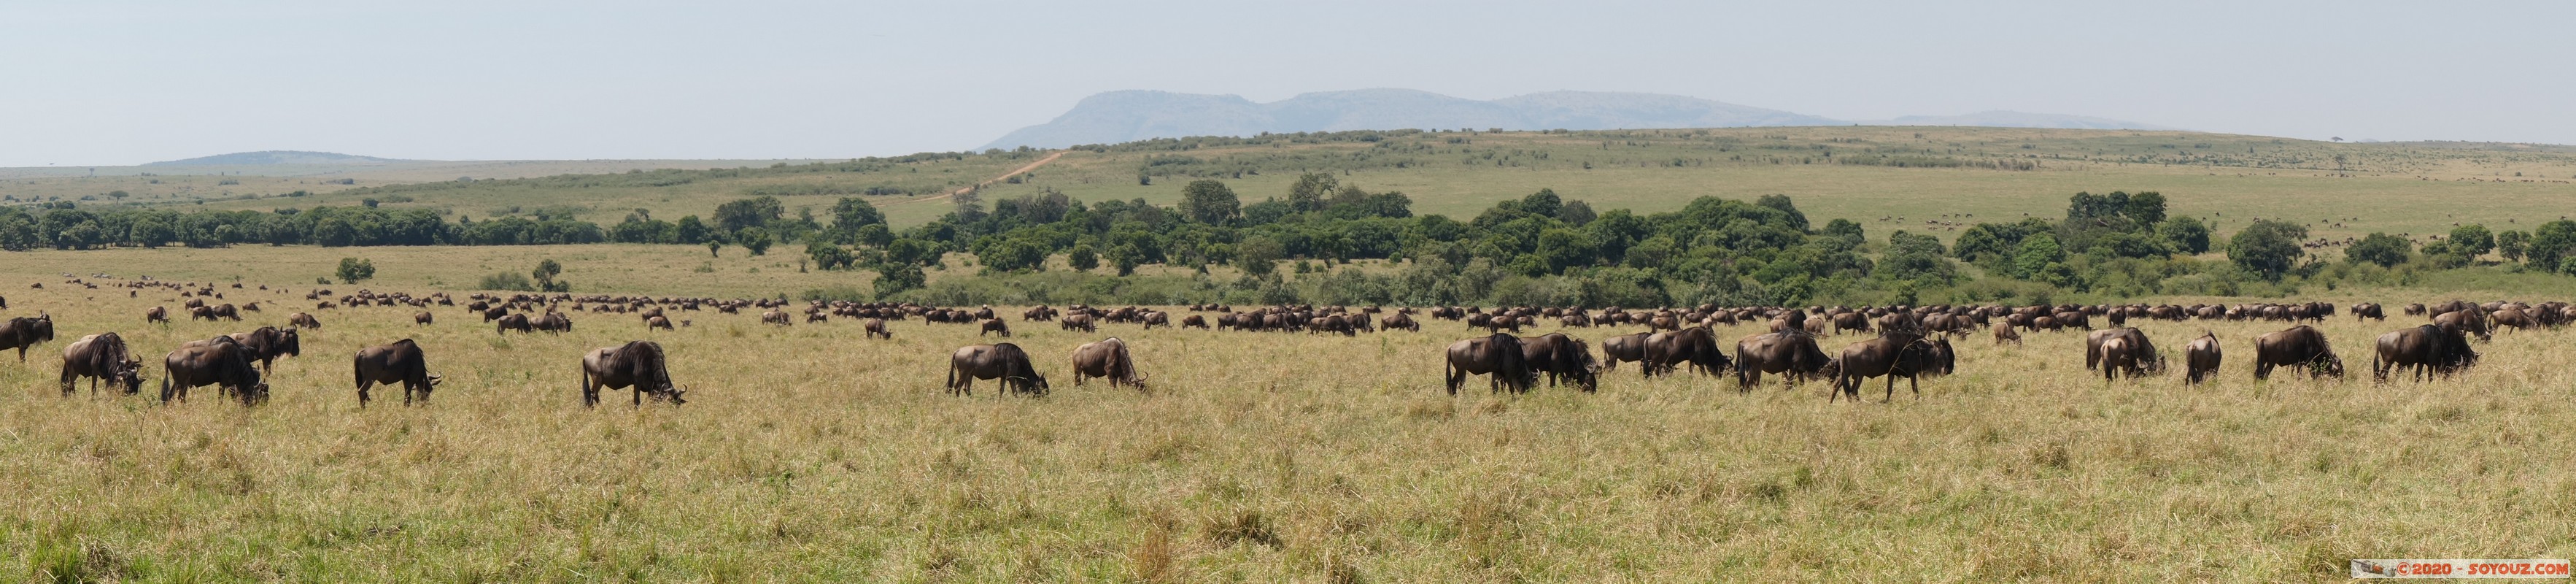 Masai Mara - Wildebeest (Gnou)
Mots-clés: geo:lat=-1.58298542 geo:lon=35.24229505 geotagged Keekorok KEN Kenya Narok Masai Mara Gnou Wildebeest panorama